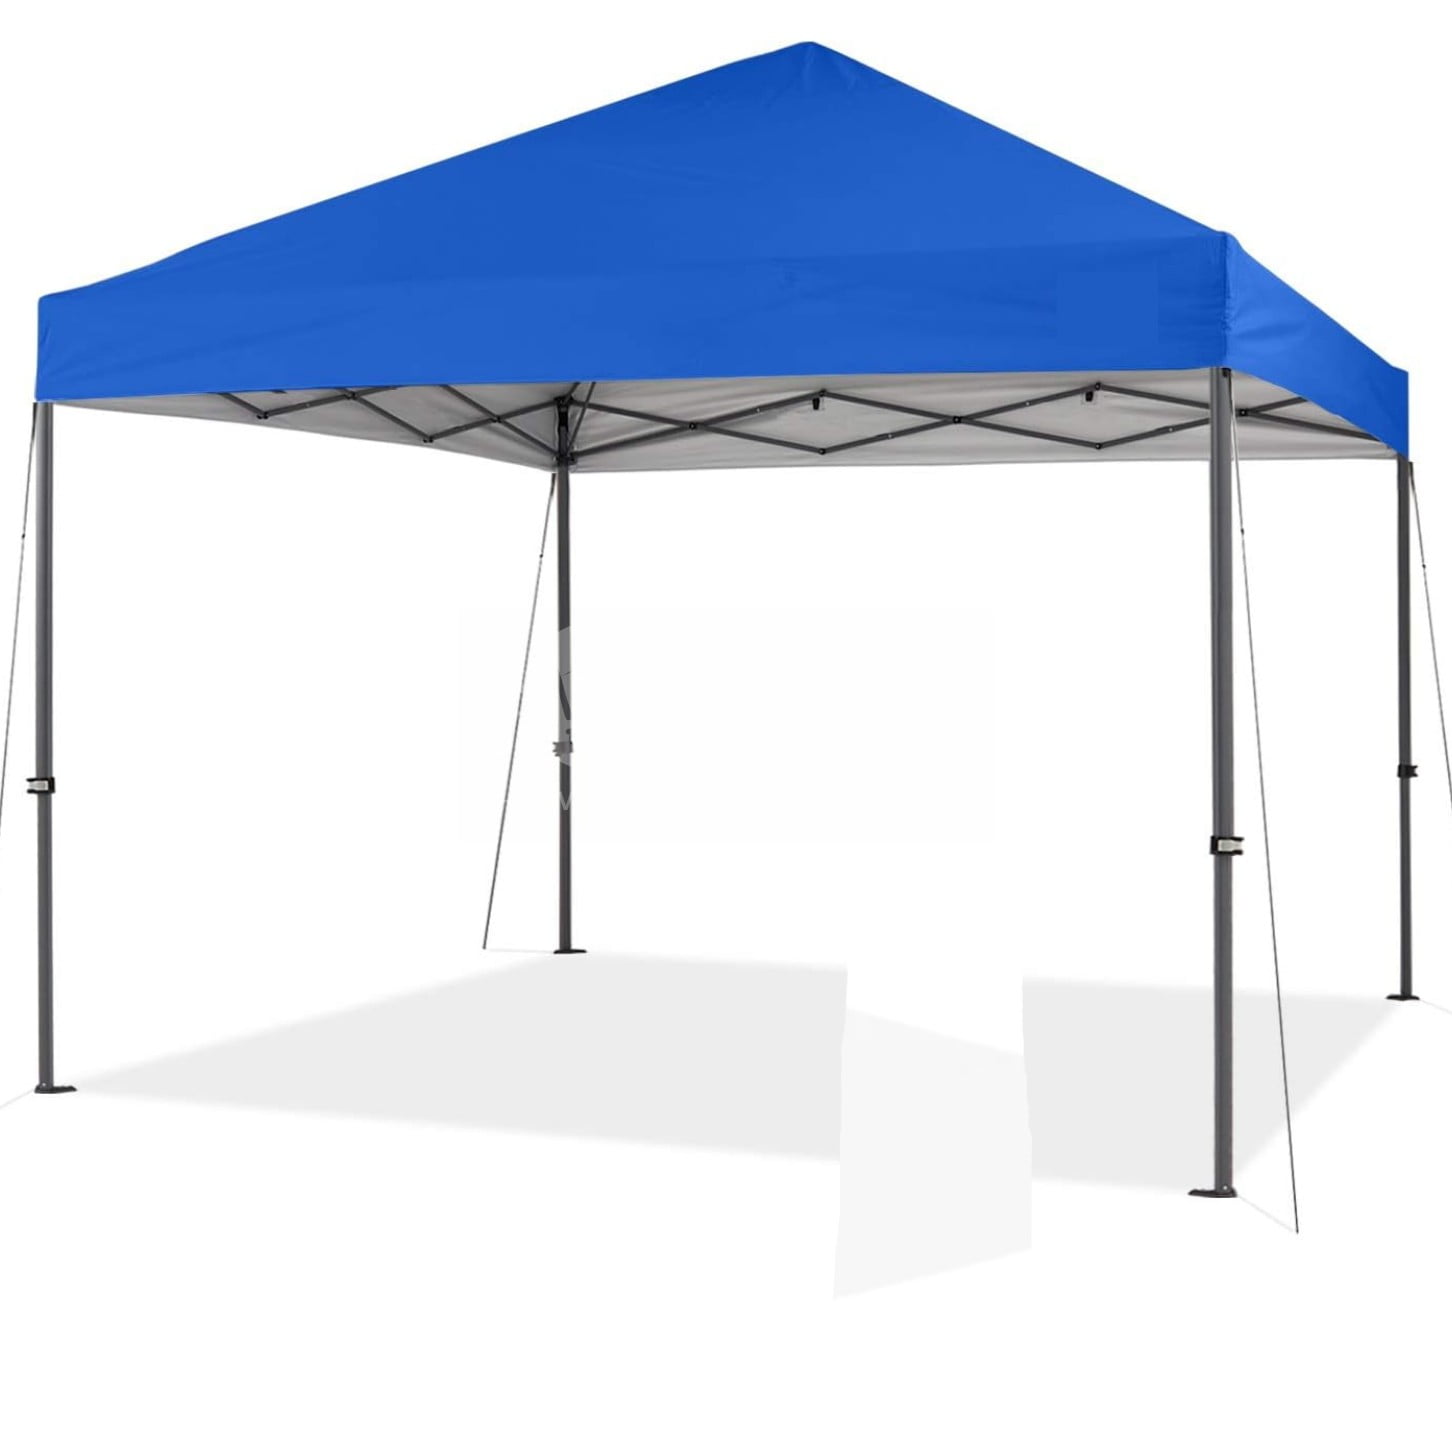 Universal - Tente de camping avec auvent multifonctionnel 5 * 3 pour la  couverture extérieure de Mitsumoto, bâton d'aluminium pour auvent de  protection contre la pluie et la protection solaire(Vert) - Pergolas